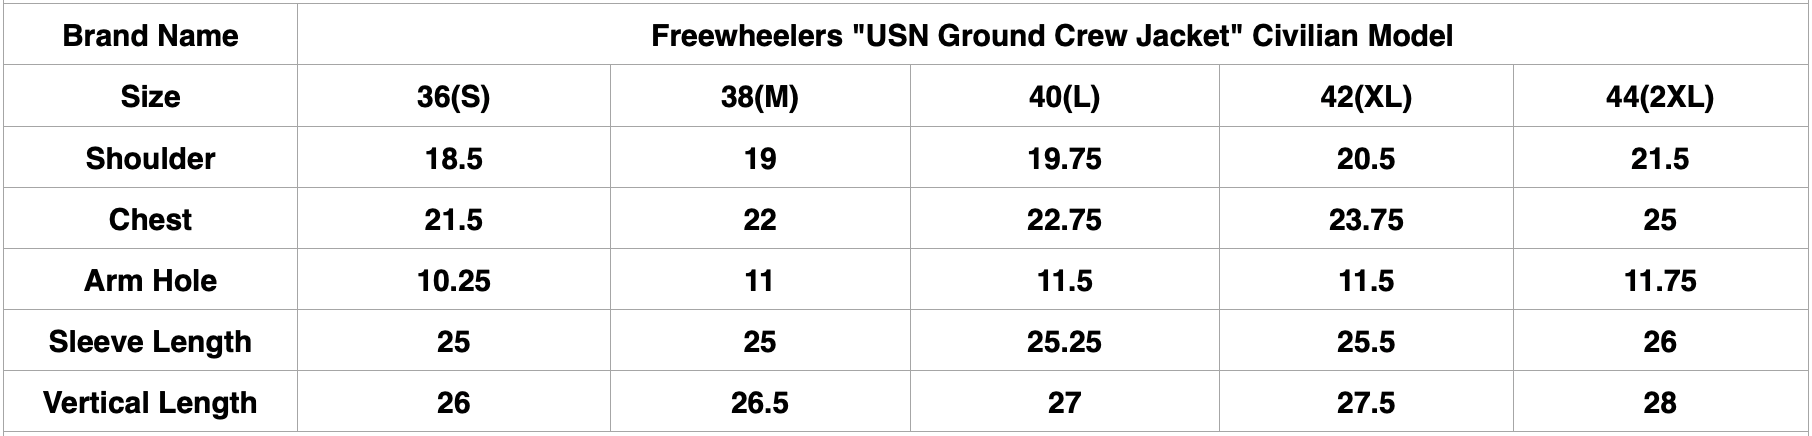 Freewheelers "USN Ground Crew Jacket" Civilian Model